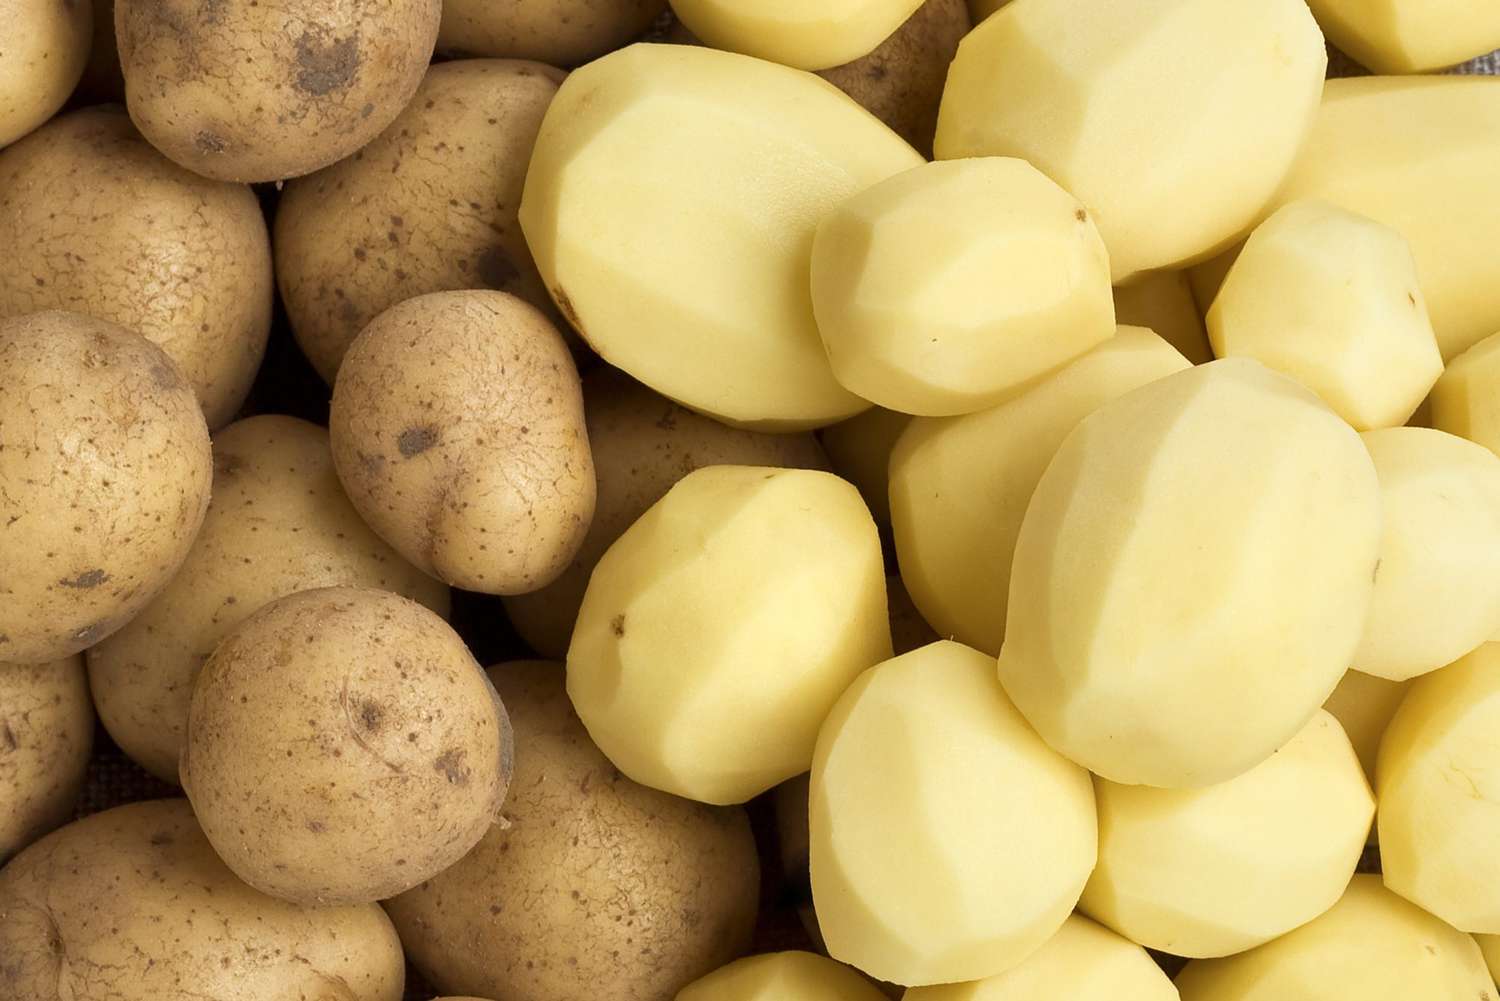 Raw potatoes next to peeled potatoes